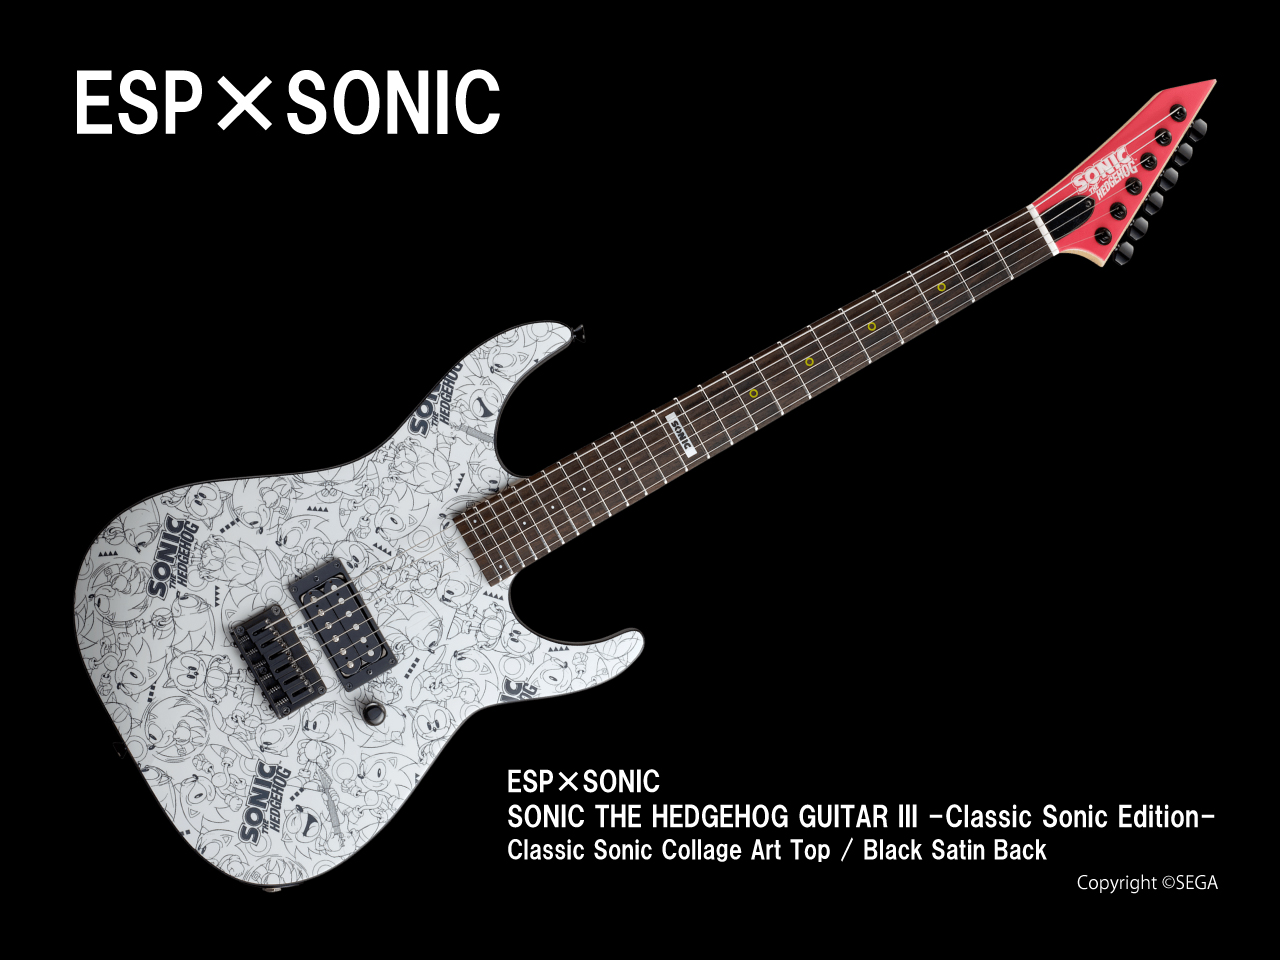 【2025年5月31日までの期間限定限定生産】ESP×SONIC(イーエスピーxソニック) SONIC THE HEDGEHOG GUITAR III -Classic Sonic Edition- / Classic Sonic Collage Art / Black Satin